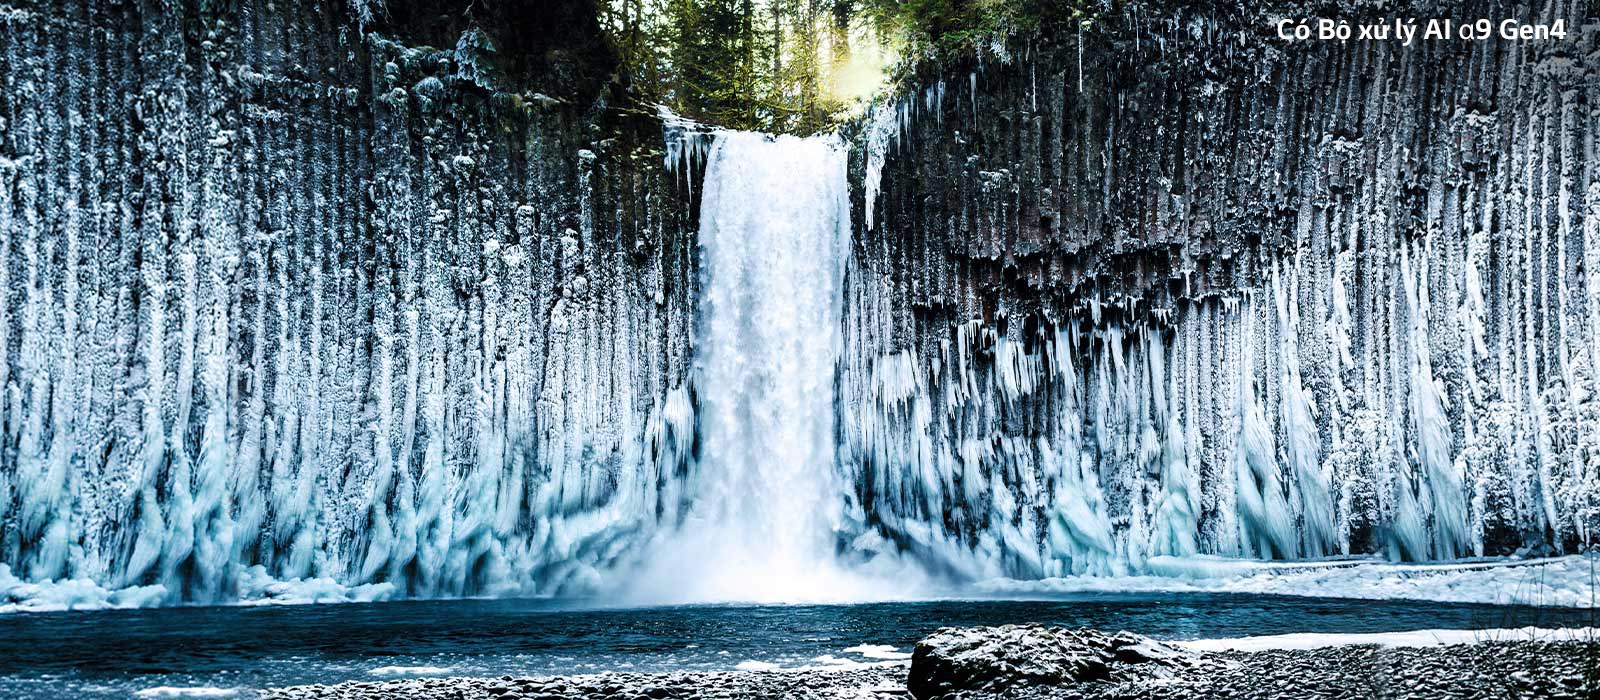 Thanh trượt so sánh chất lượng hình ảnh của một thác nước đóng băng trong rừng.